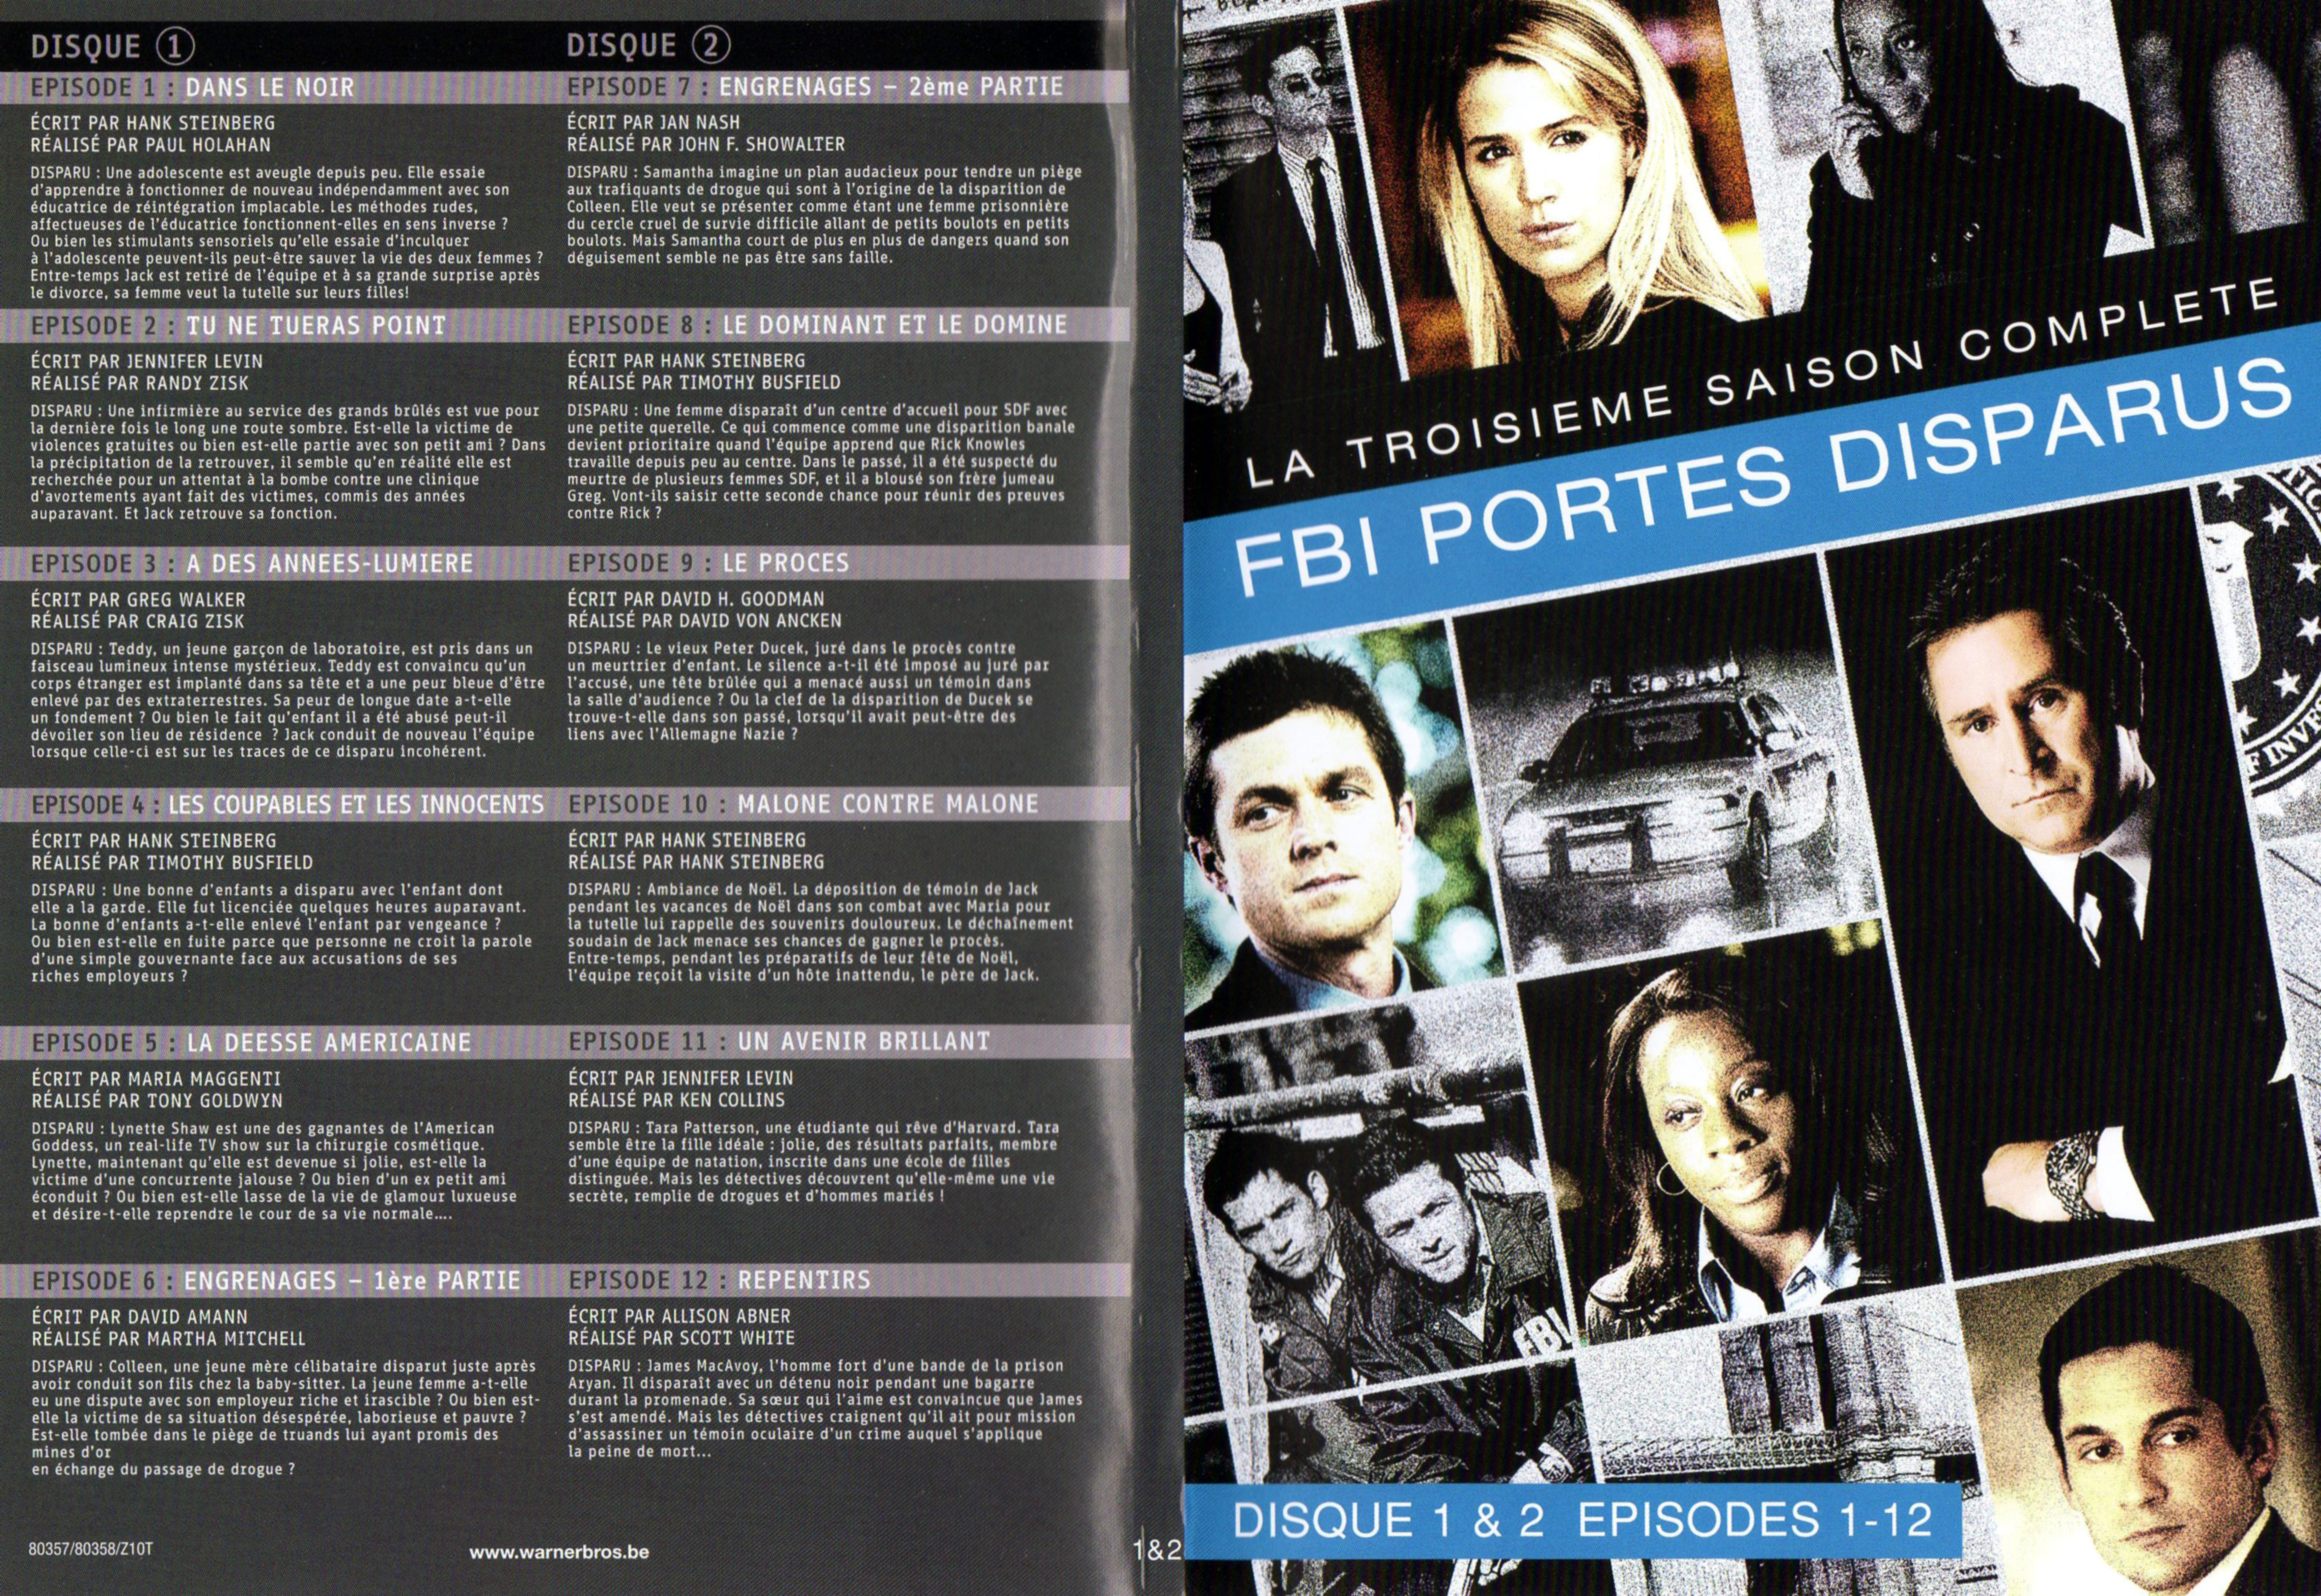 Jaquette DVD FBI Ports Disparus Saison 3 vol 1